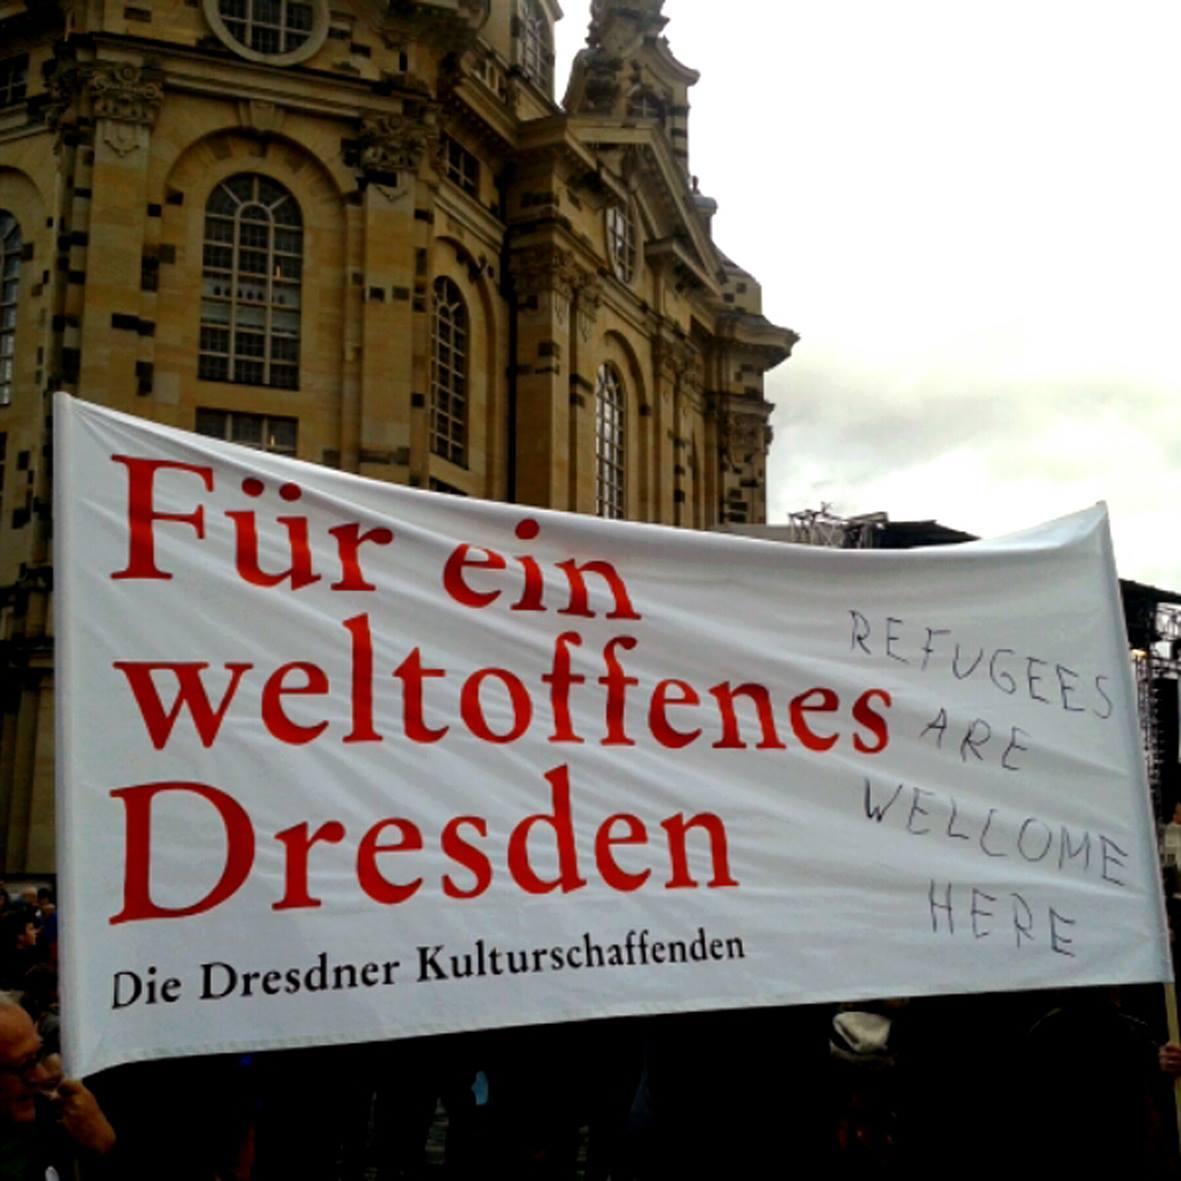 Initiative weltoffenes Dresden | Eine Vereinigung der Dresdner Kulturinstitutionen | Hashtag: #weltoffenesDD | http://t.co/iWe0IwwmyS